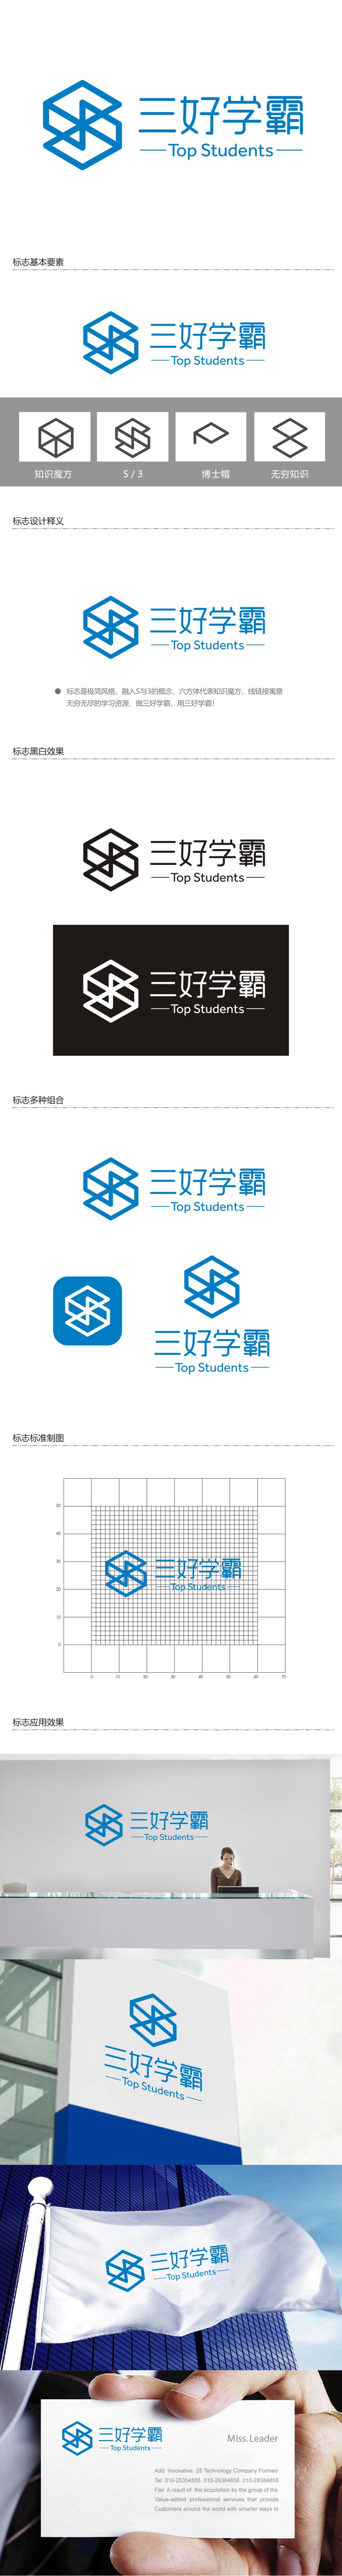 谭家强的三好学霸logo设计